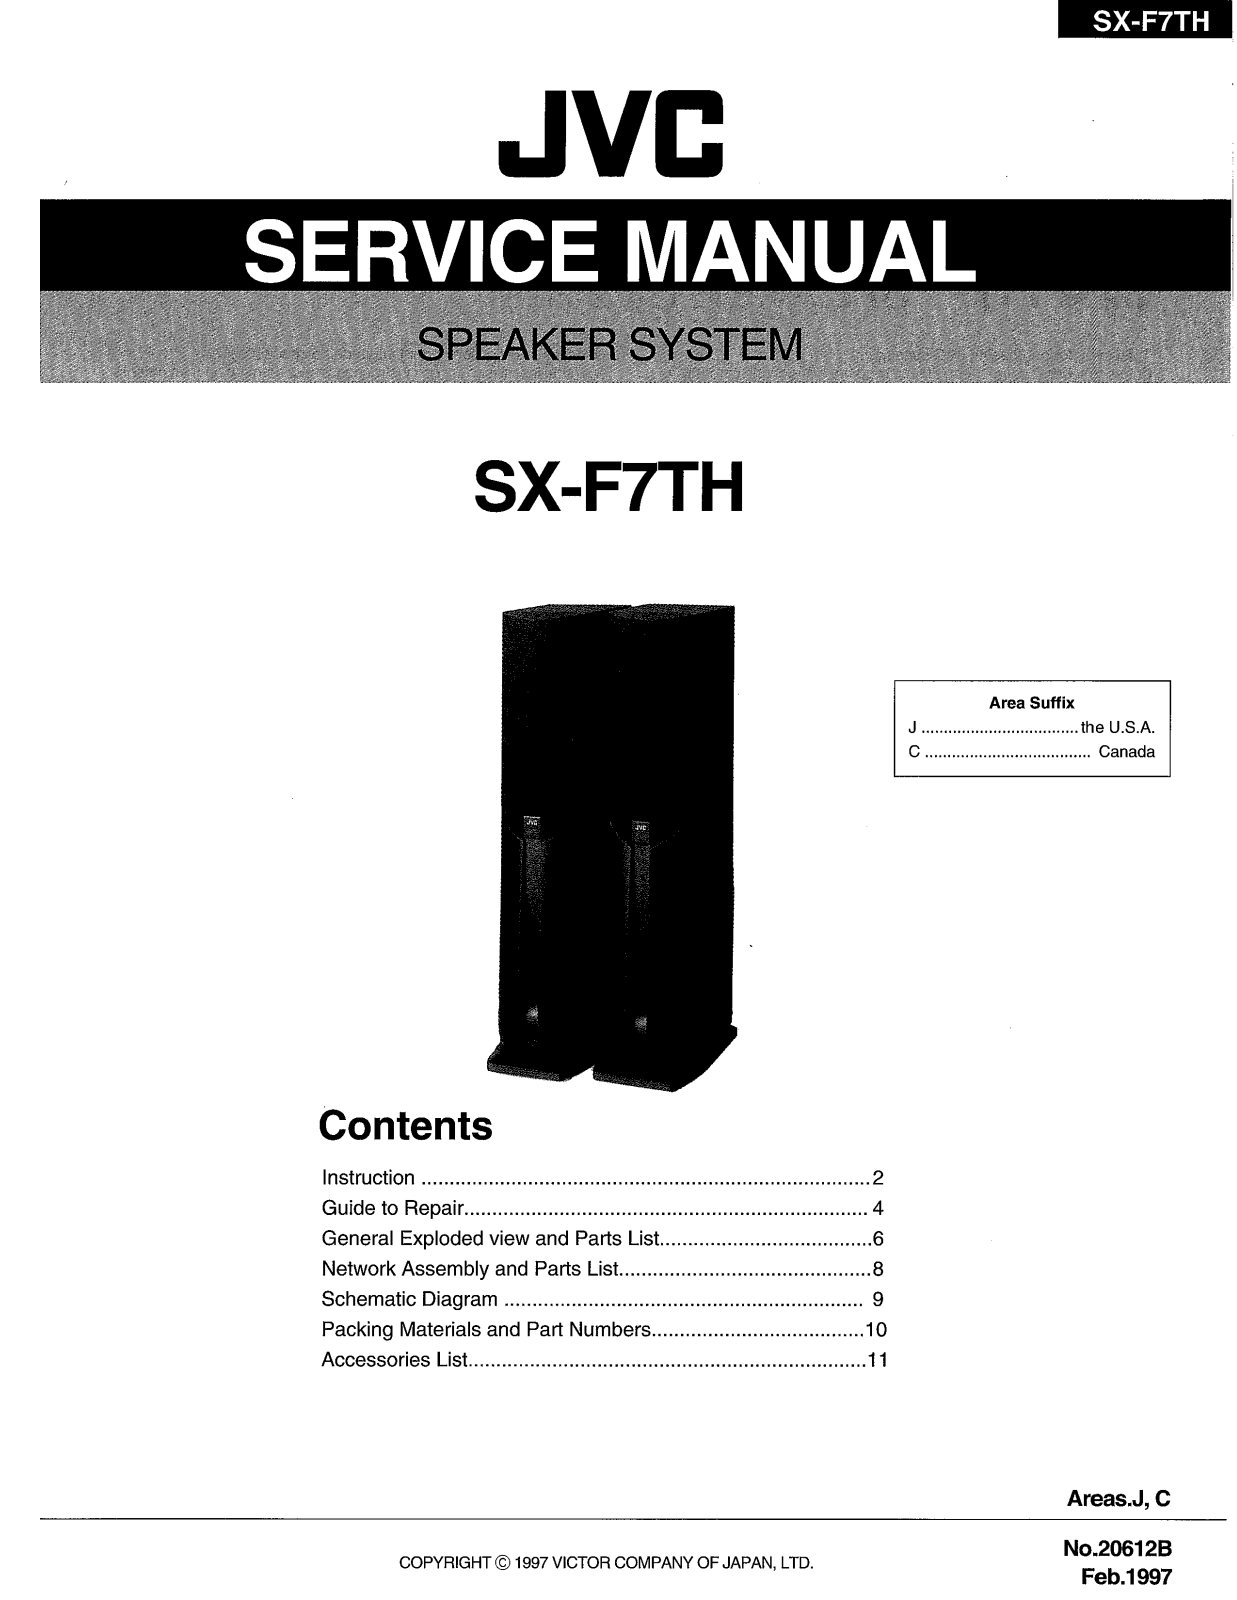 JVC SX-F7TH Service Manual